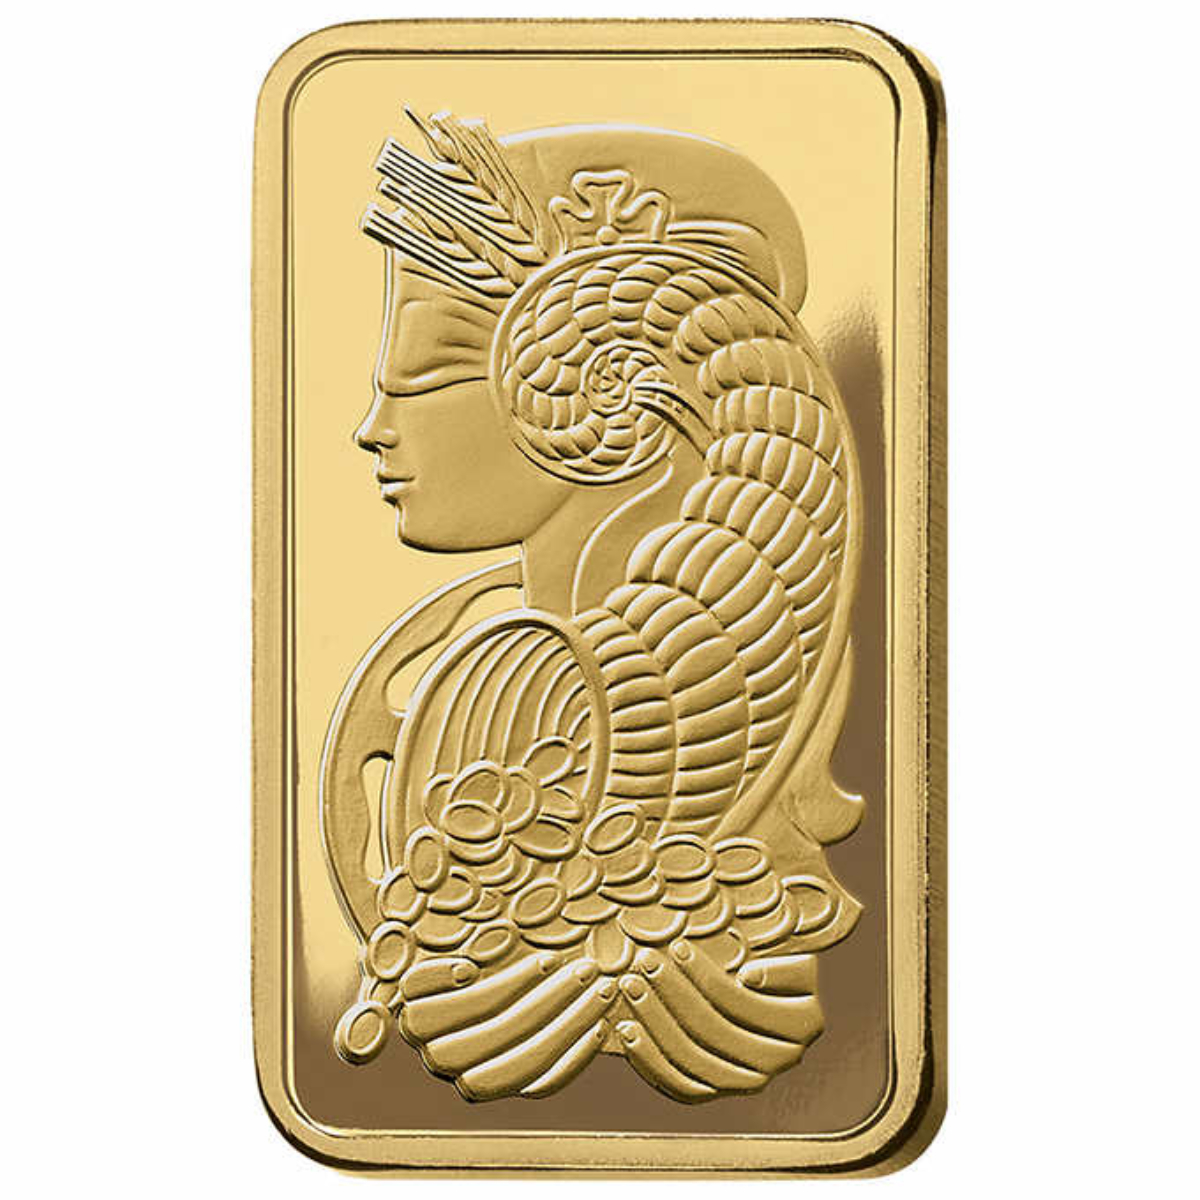 Costco's 1-ounce gold bars